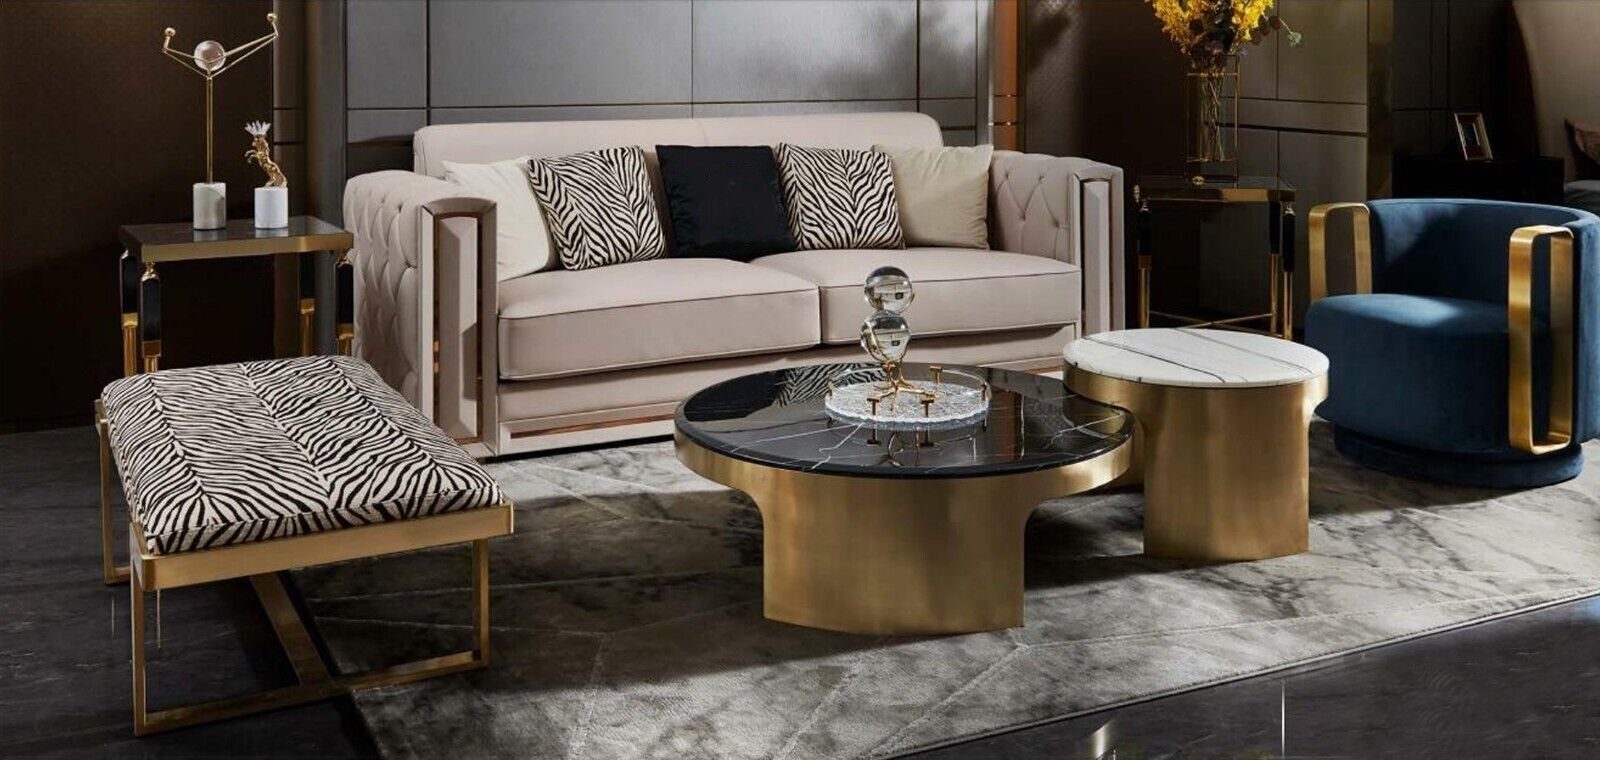 JVmoebel Couchtisch Doppelter Couchtisch Luxus Tisch Wohnzimmer Modern Möbel, Made In Europe | Couchtische